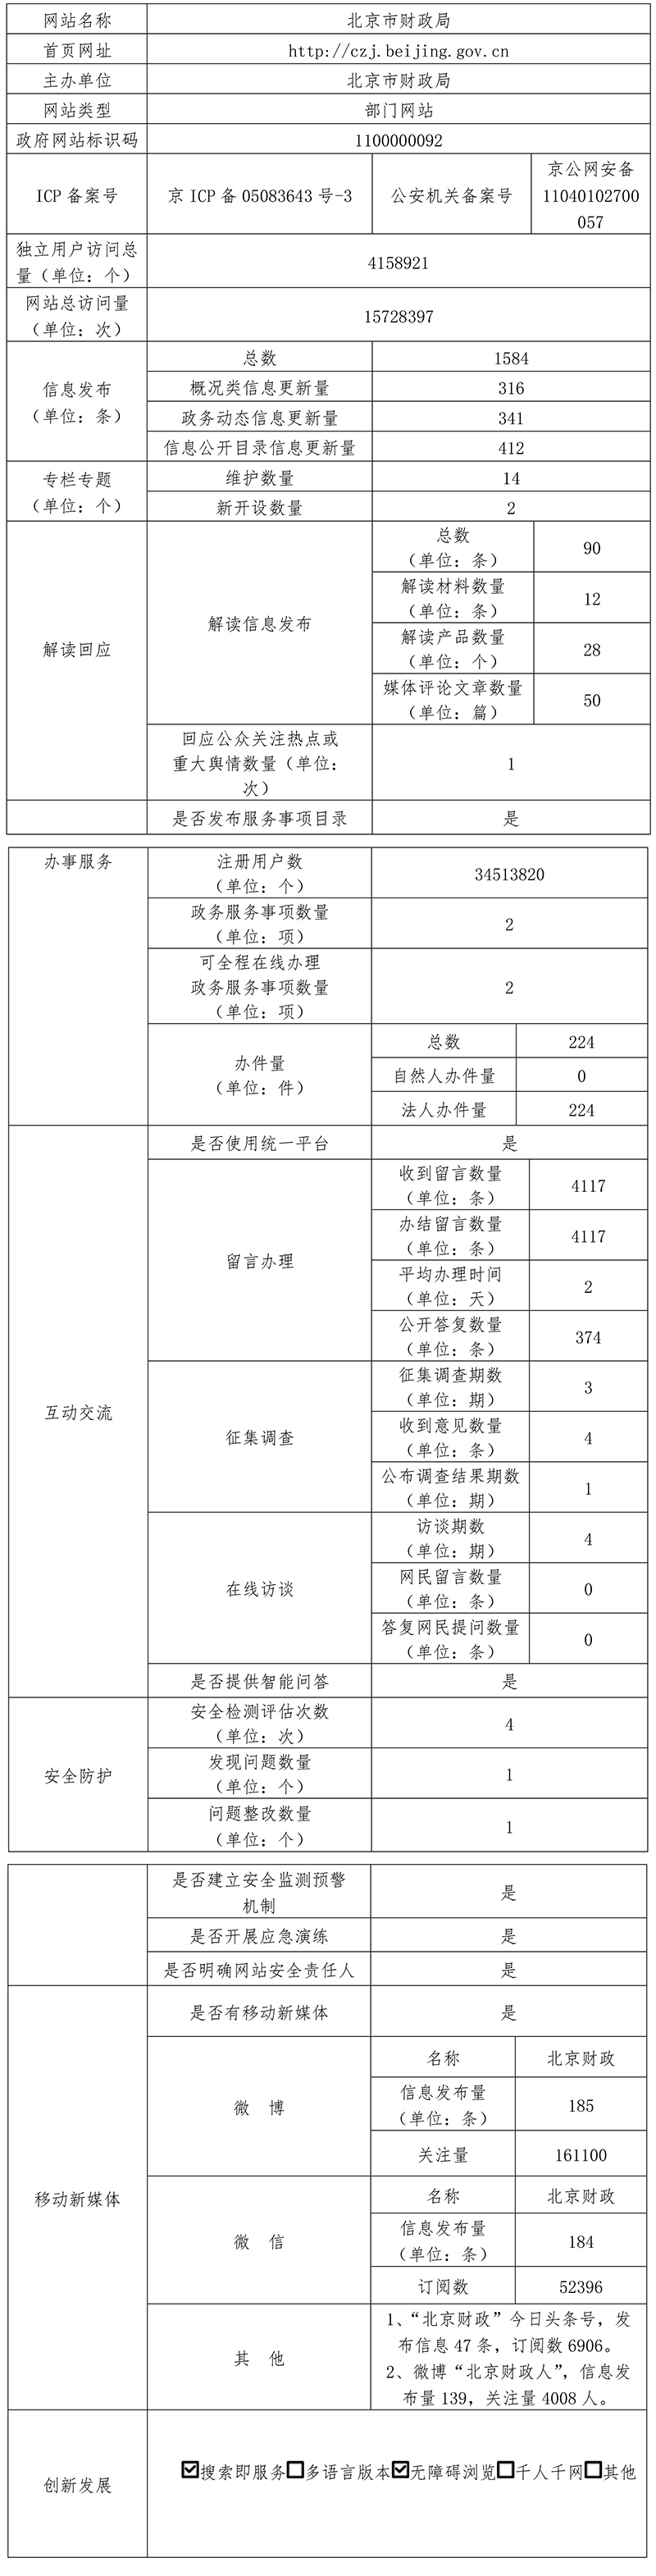 北京市财政局2021年政府网站年度工作报表